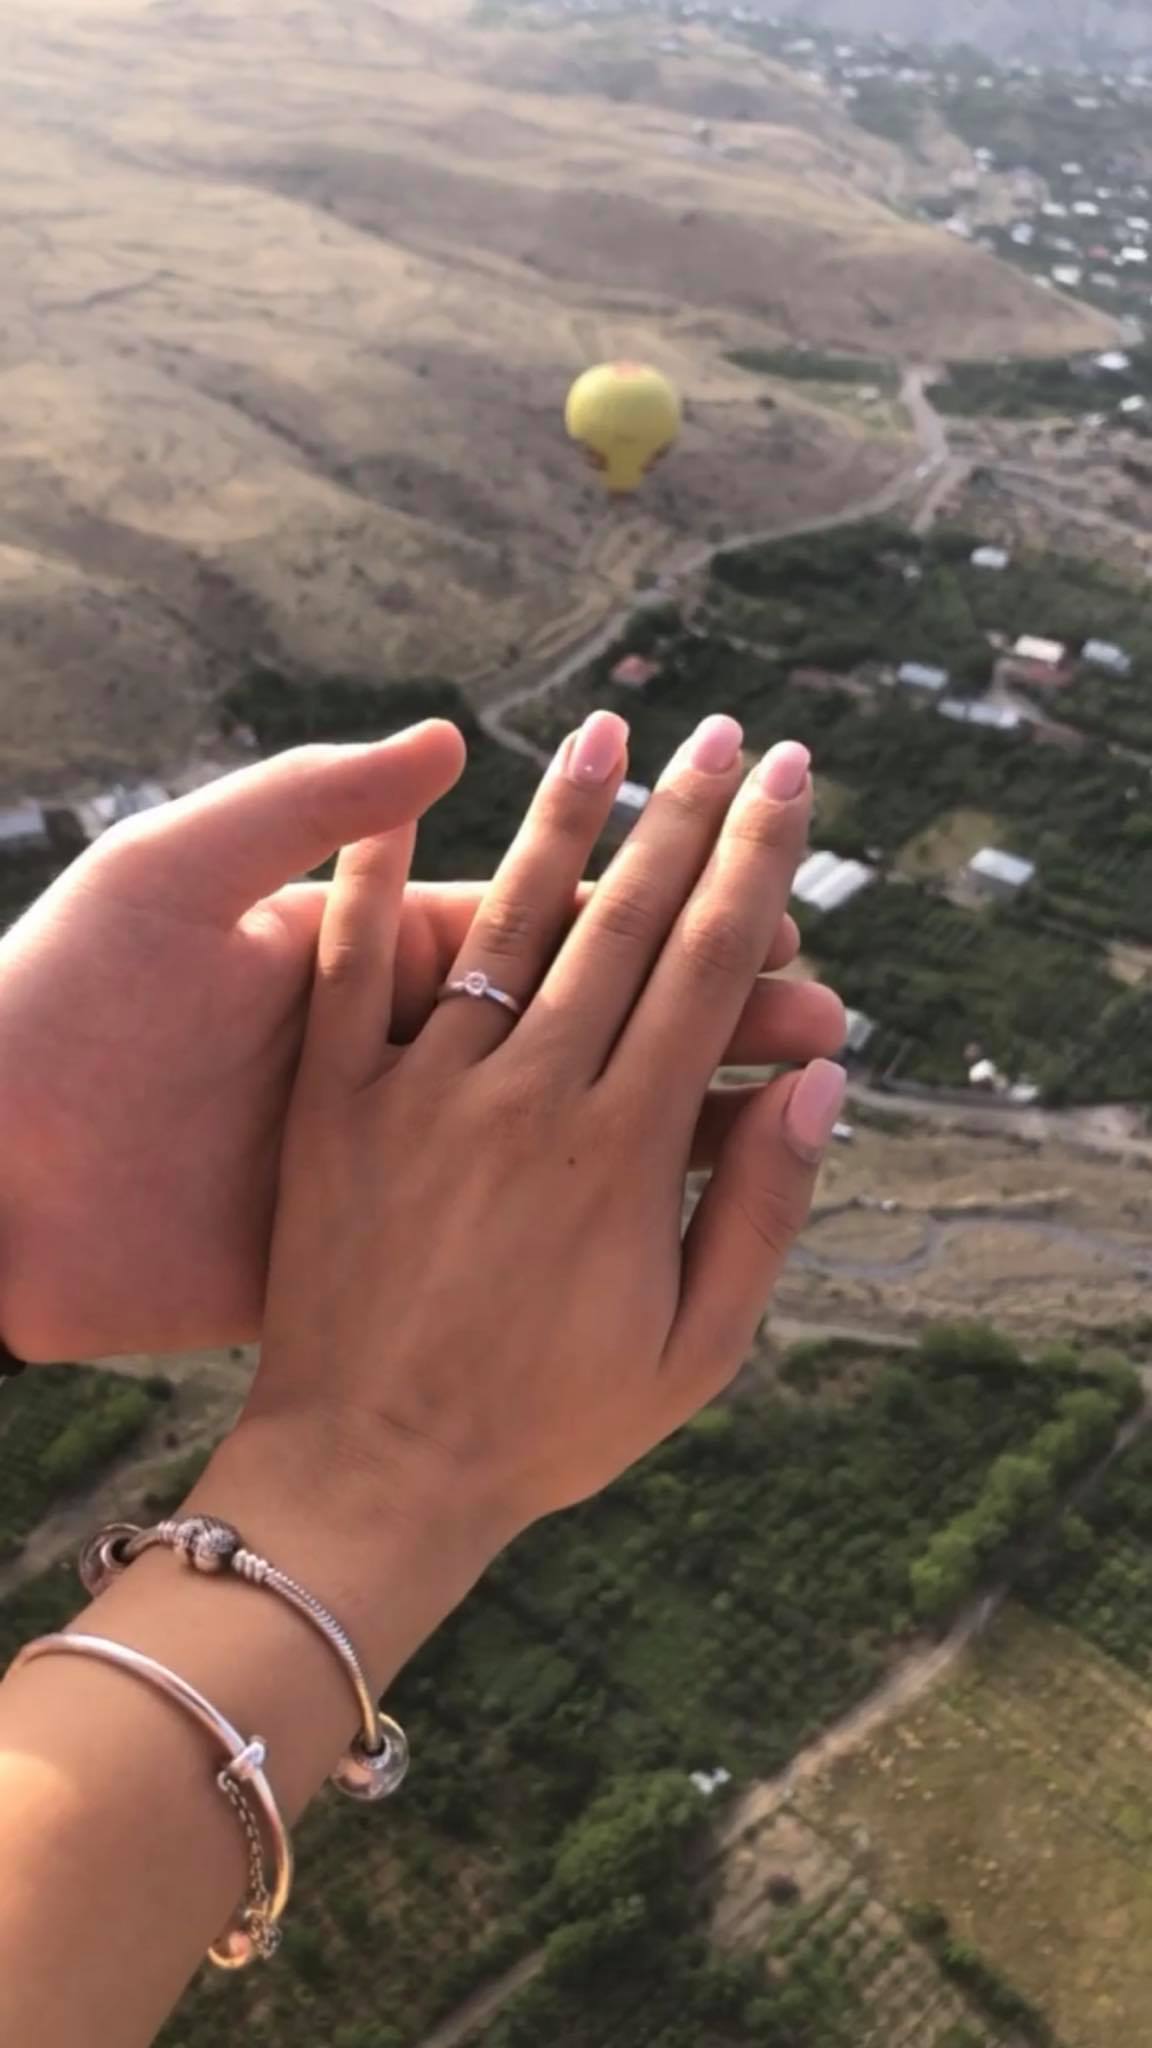 وی حلقه را از جیبش بیرون آورد و از روی بالون افتاد. »  : گروه قطب نما آرشاور پیشنهاد ازدواج غافلگیرکننده ای را در ماشا بالون ارائه می دهد – اخبار ارمنستان